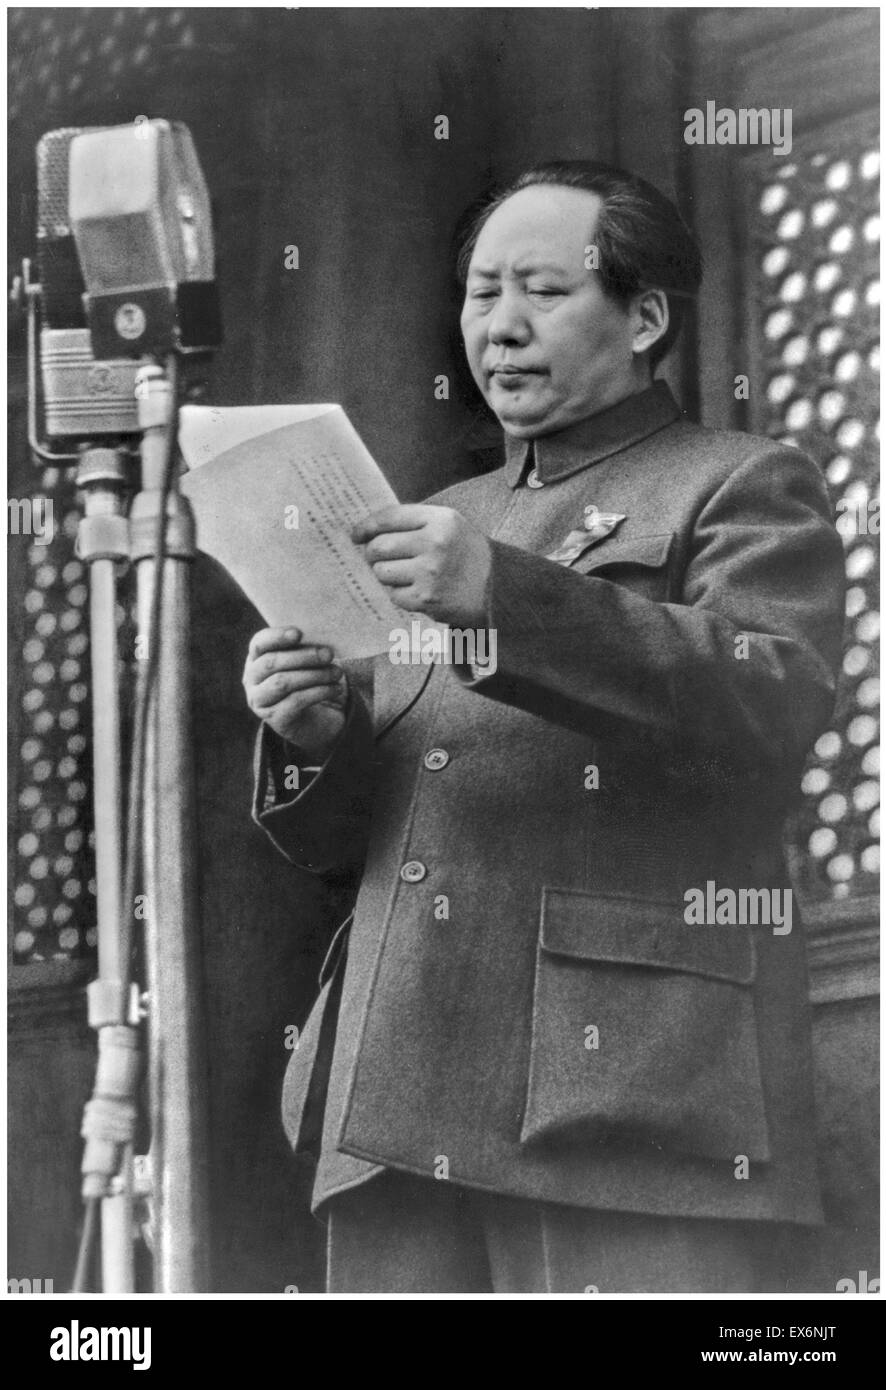 Mao Zedong (Mao Tse-tung, 26 décembre 1893 - 9 septembre 1976), révolutionnaire communiste chinois proclamant la fondation de la République populaire de Chine, 1949 Banque D'Images